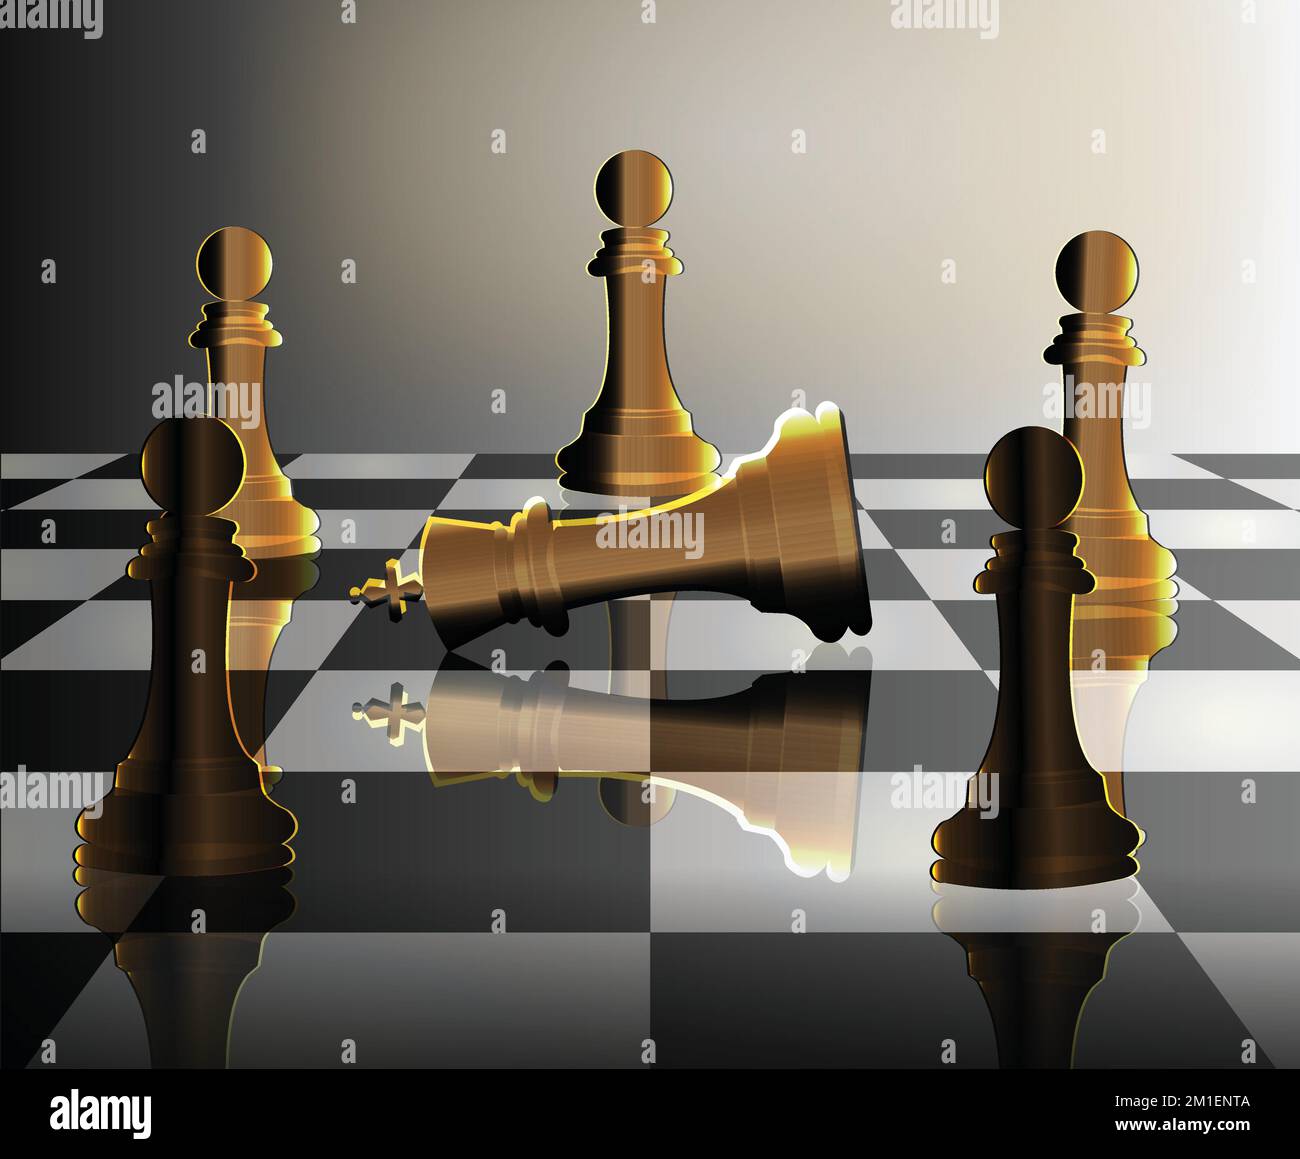 Gefallener König umgeben von Schachpfandkunst. Konzept eines Staatsstreichs mit Schachstücken Stock Vektor